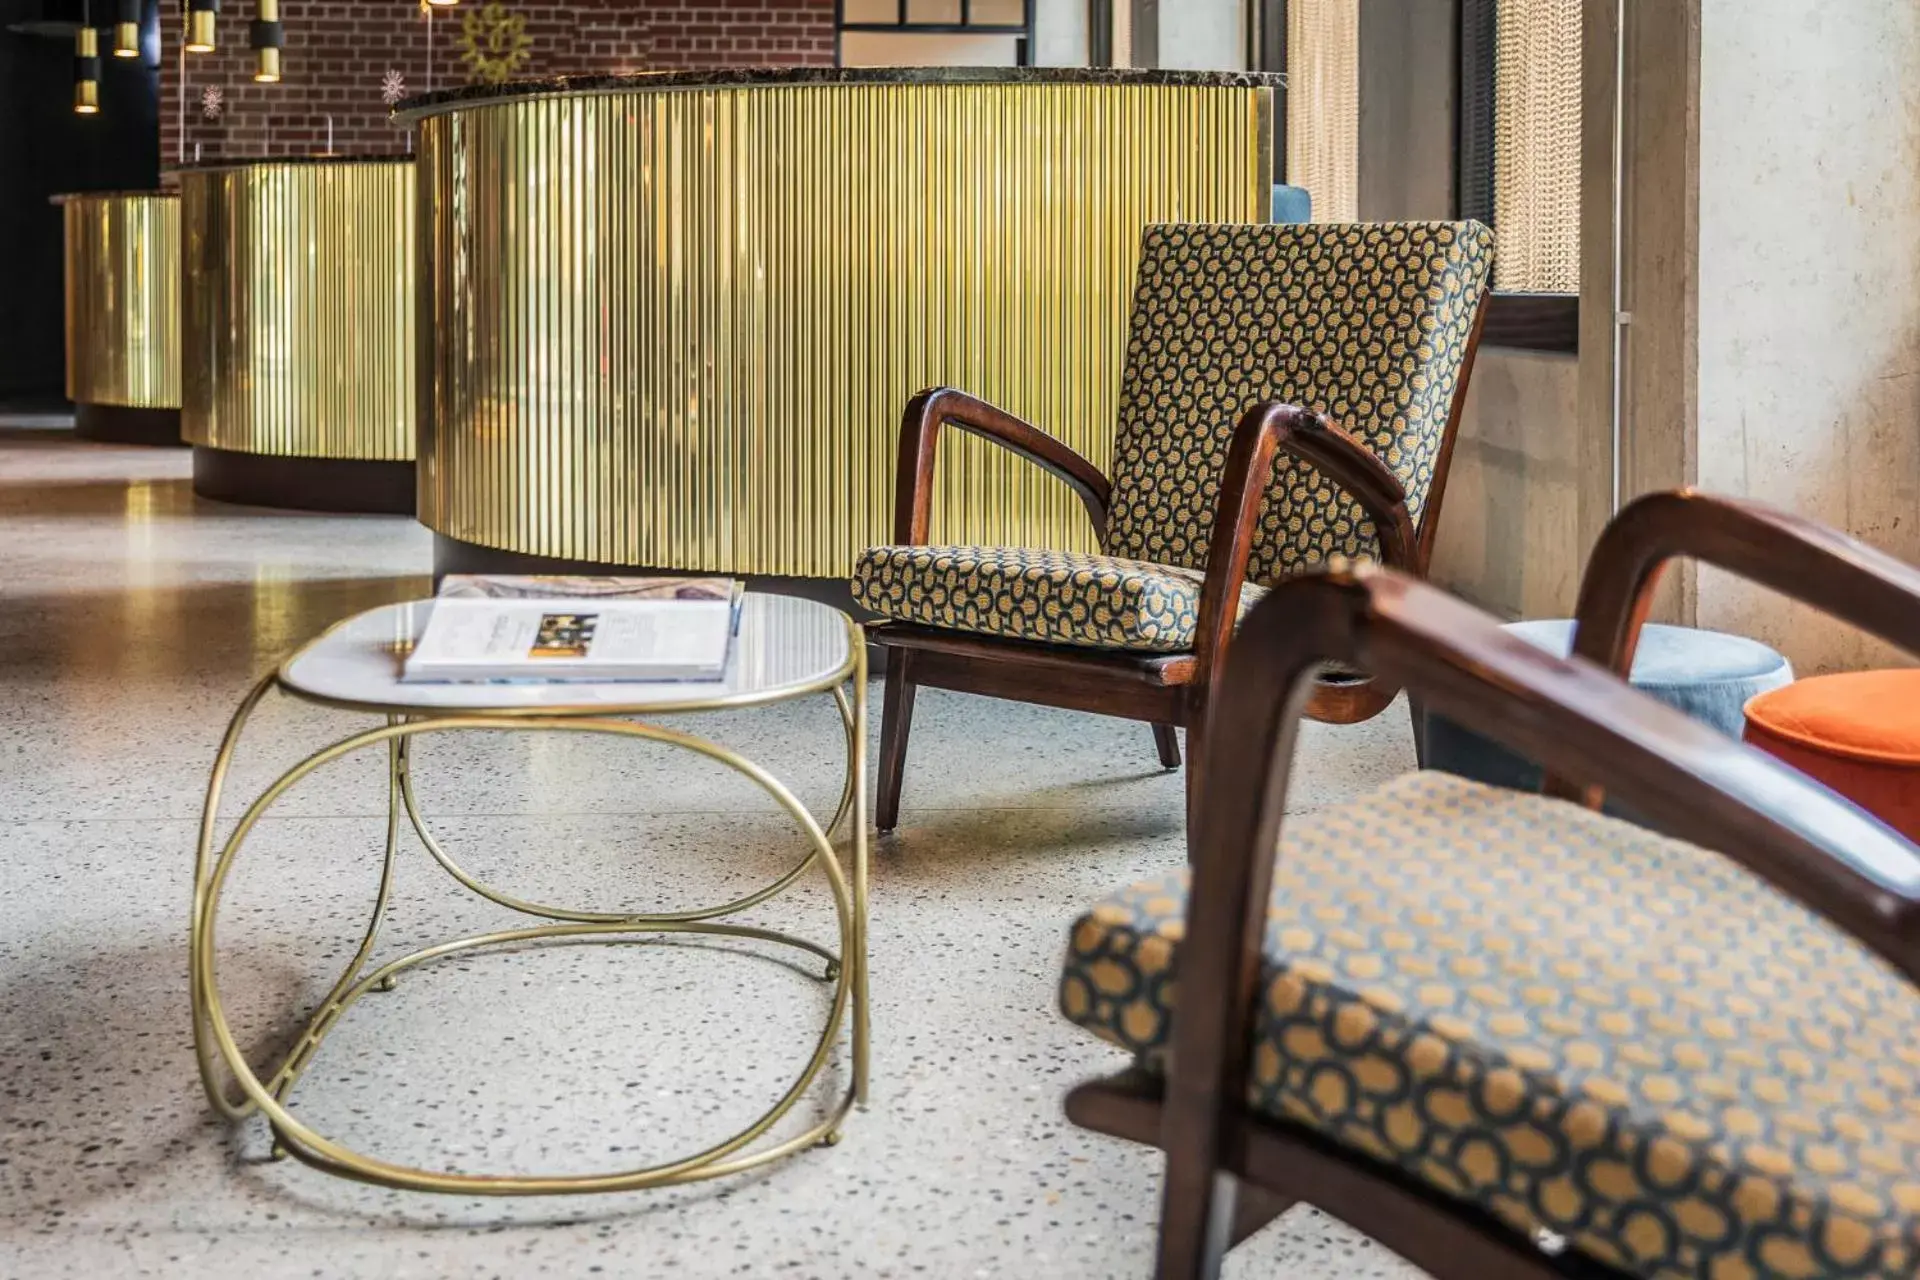 Lobby or reception in gambino hotel WERKSVIERTEL